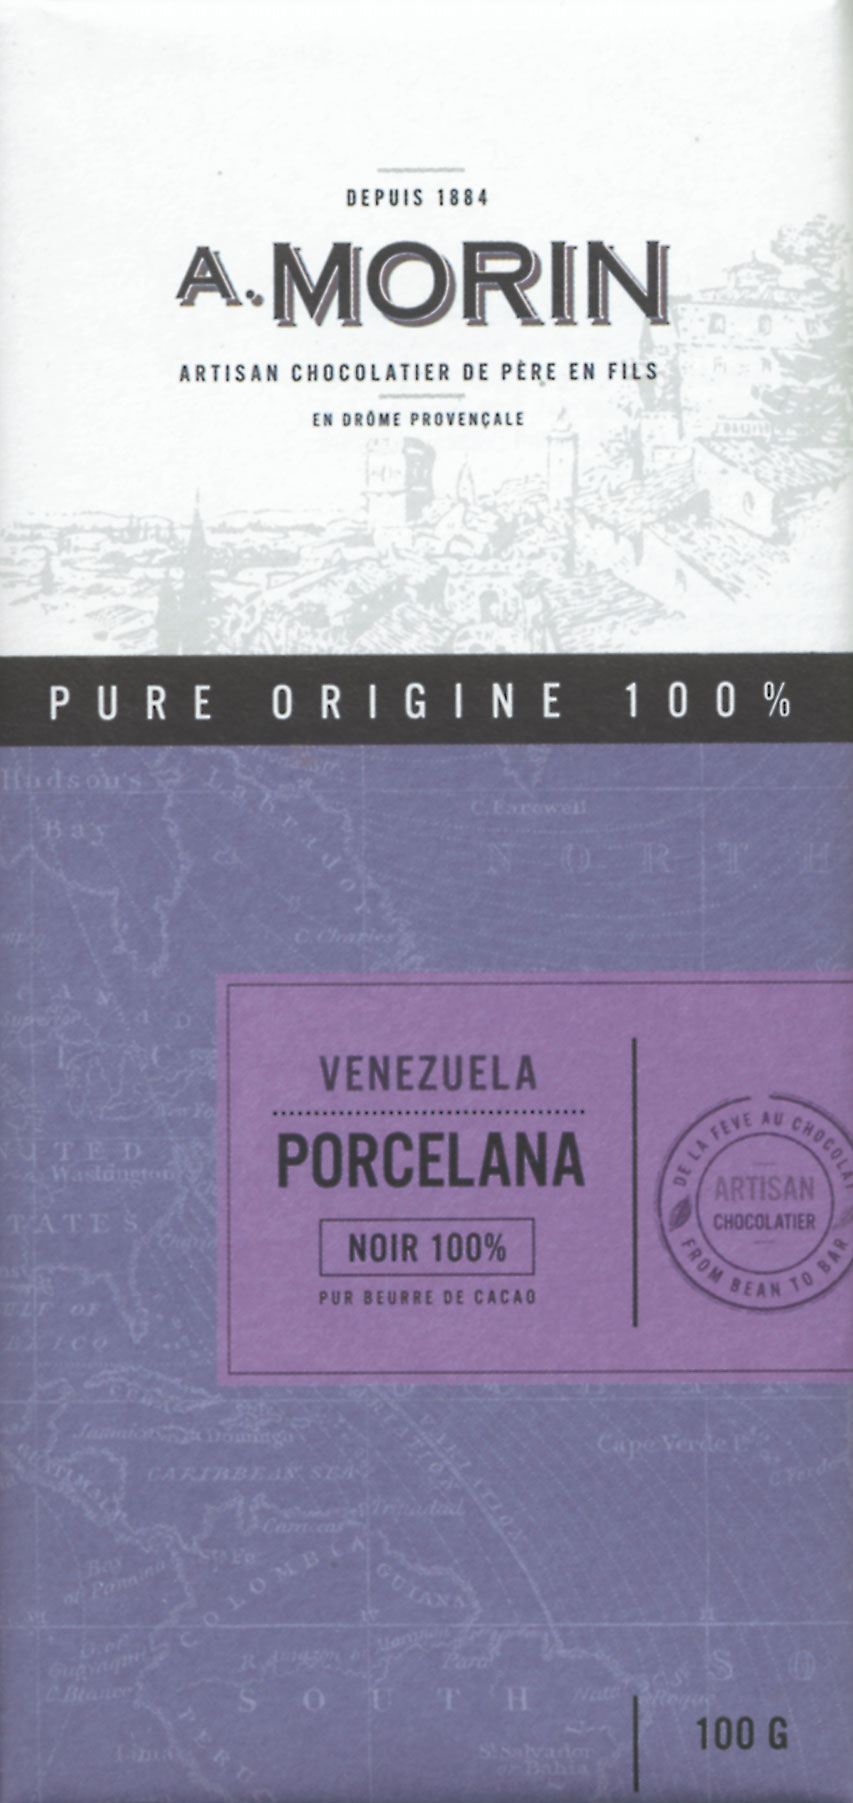 A. MORIN | Dunkle Schokolade Venezuela »Porcelana« 100%